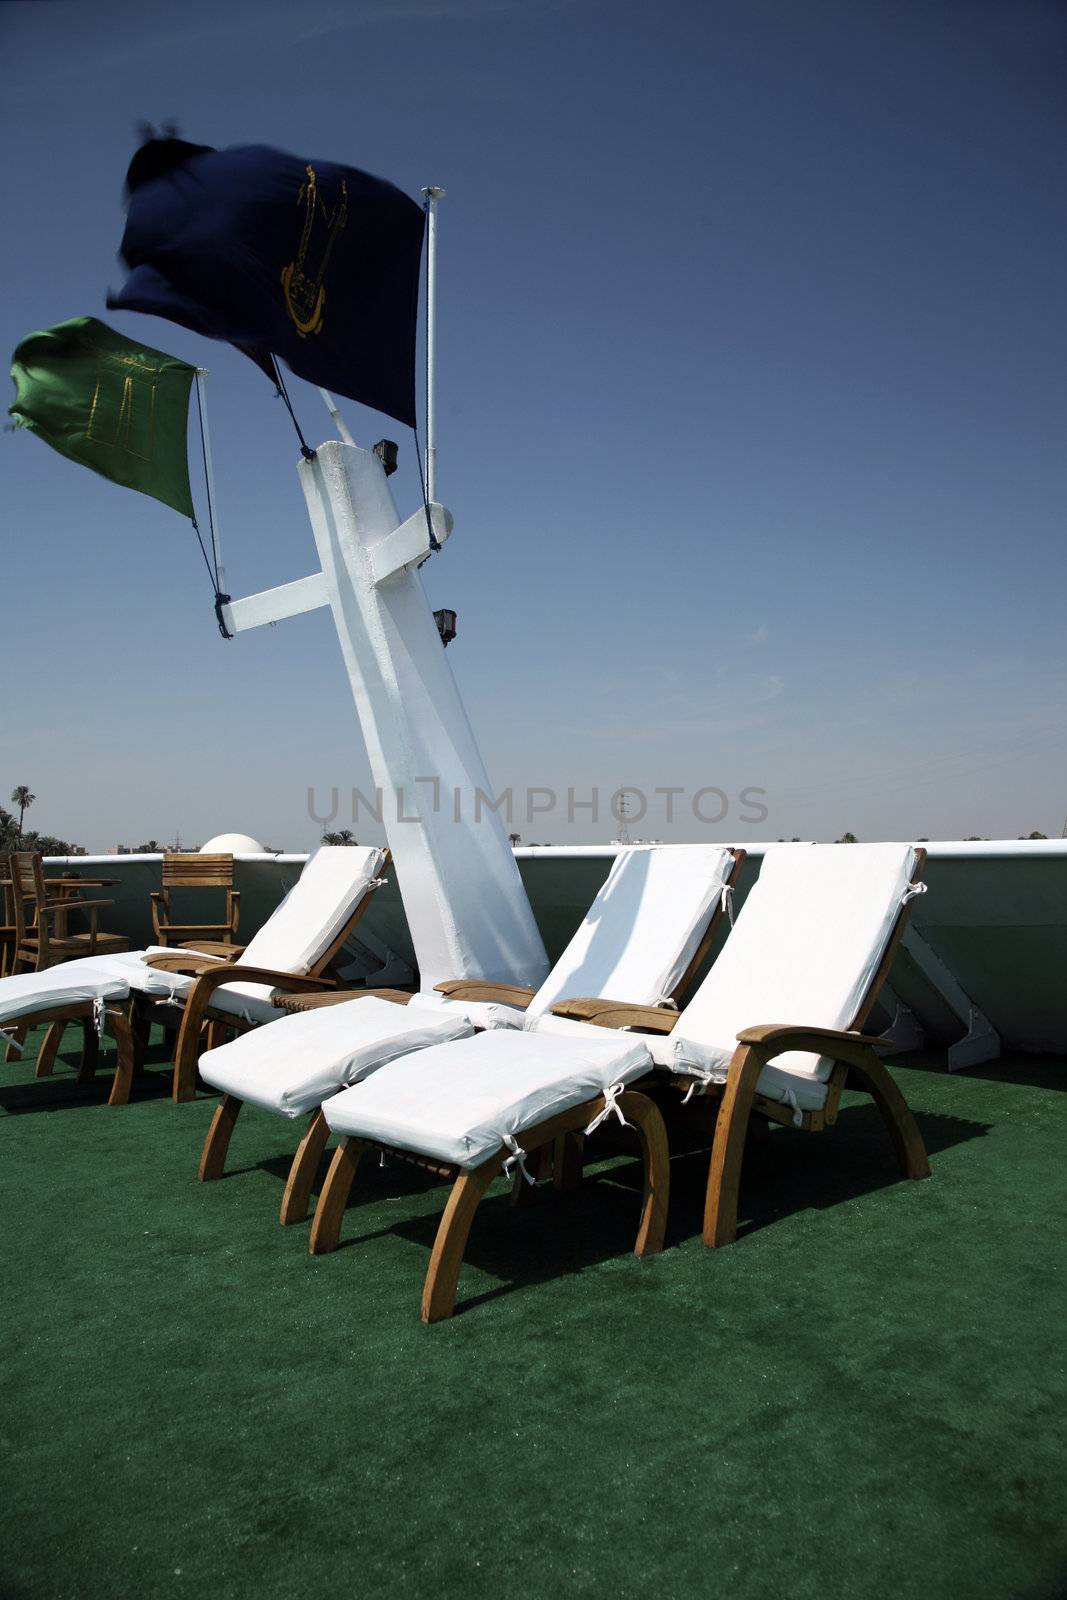 hammocks on a boat deck